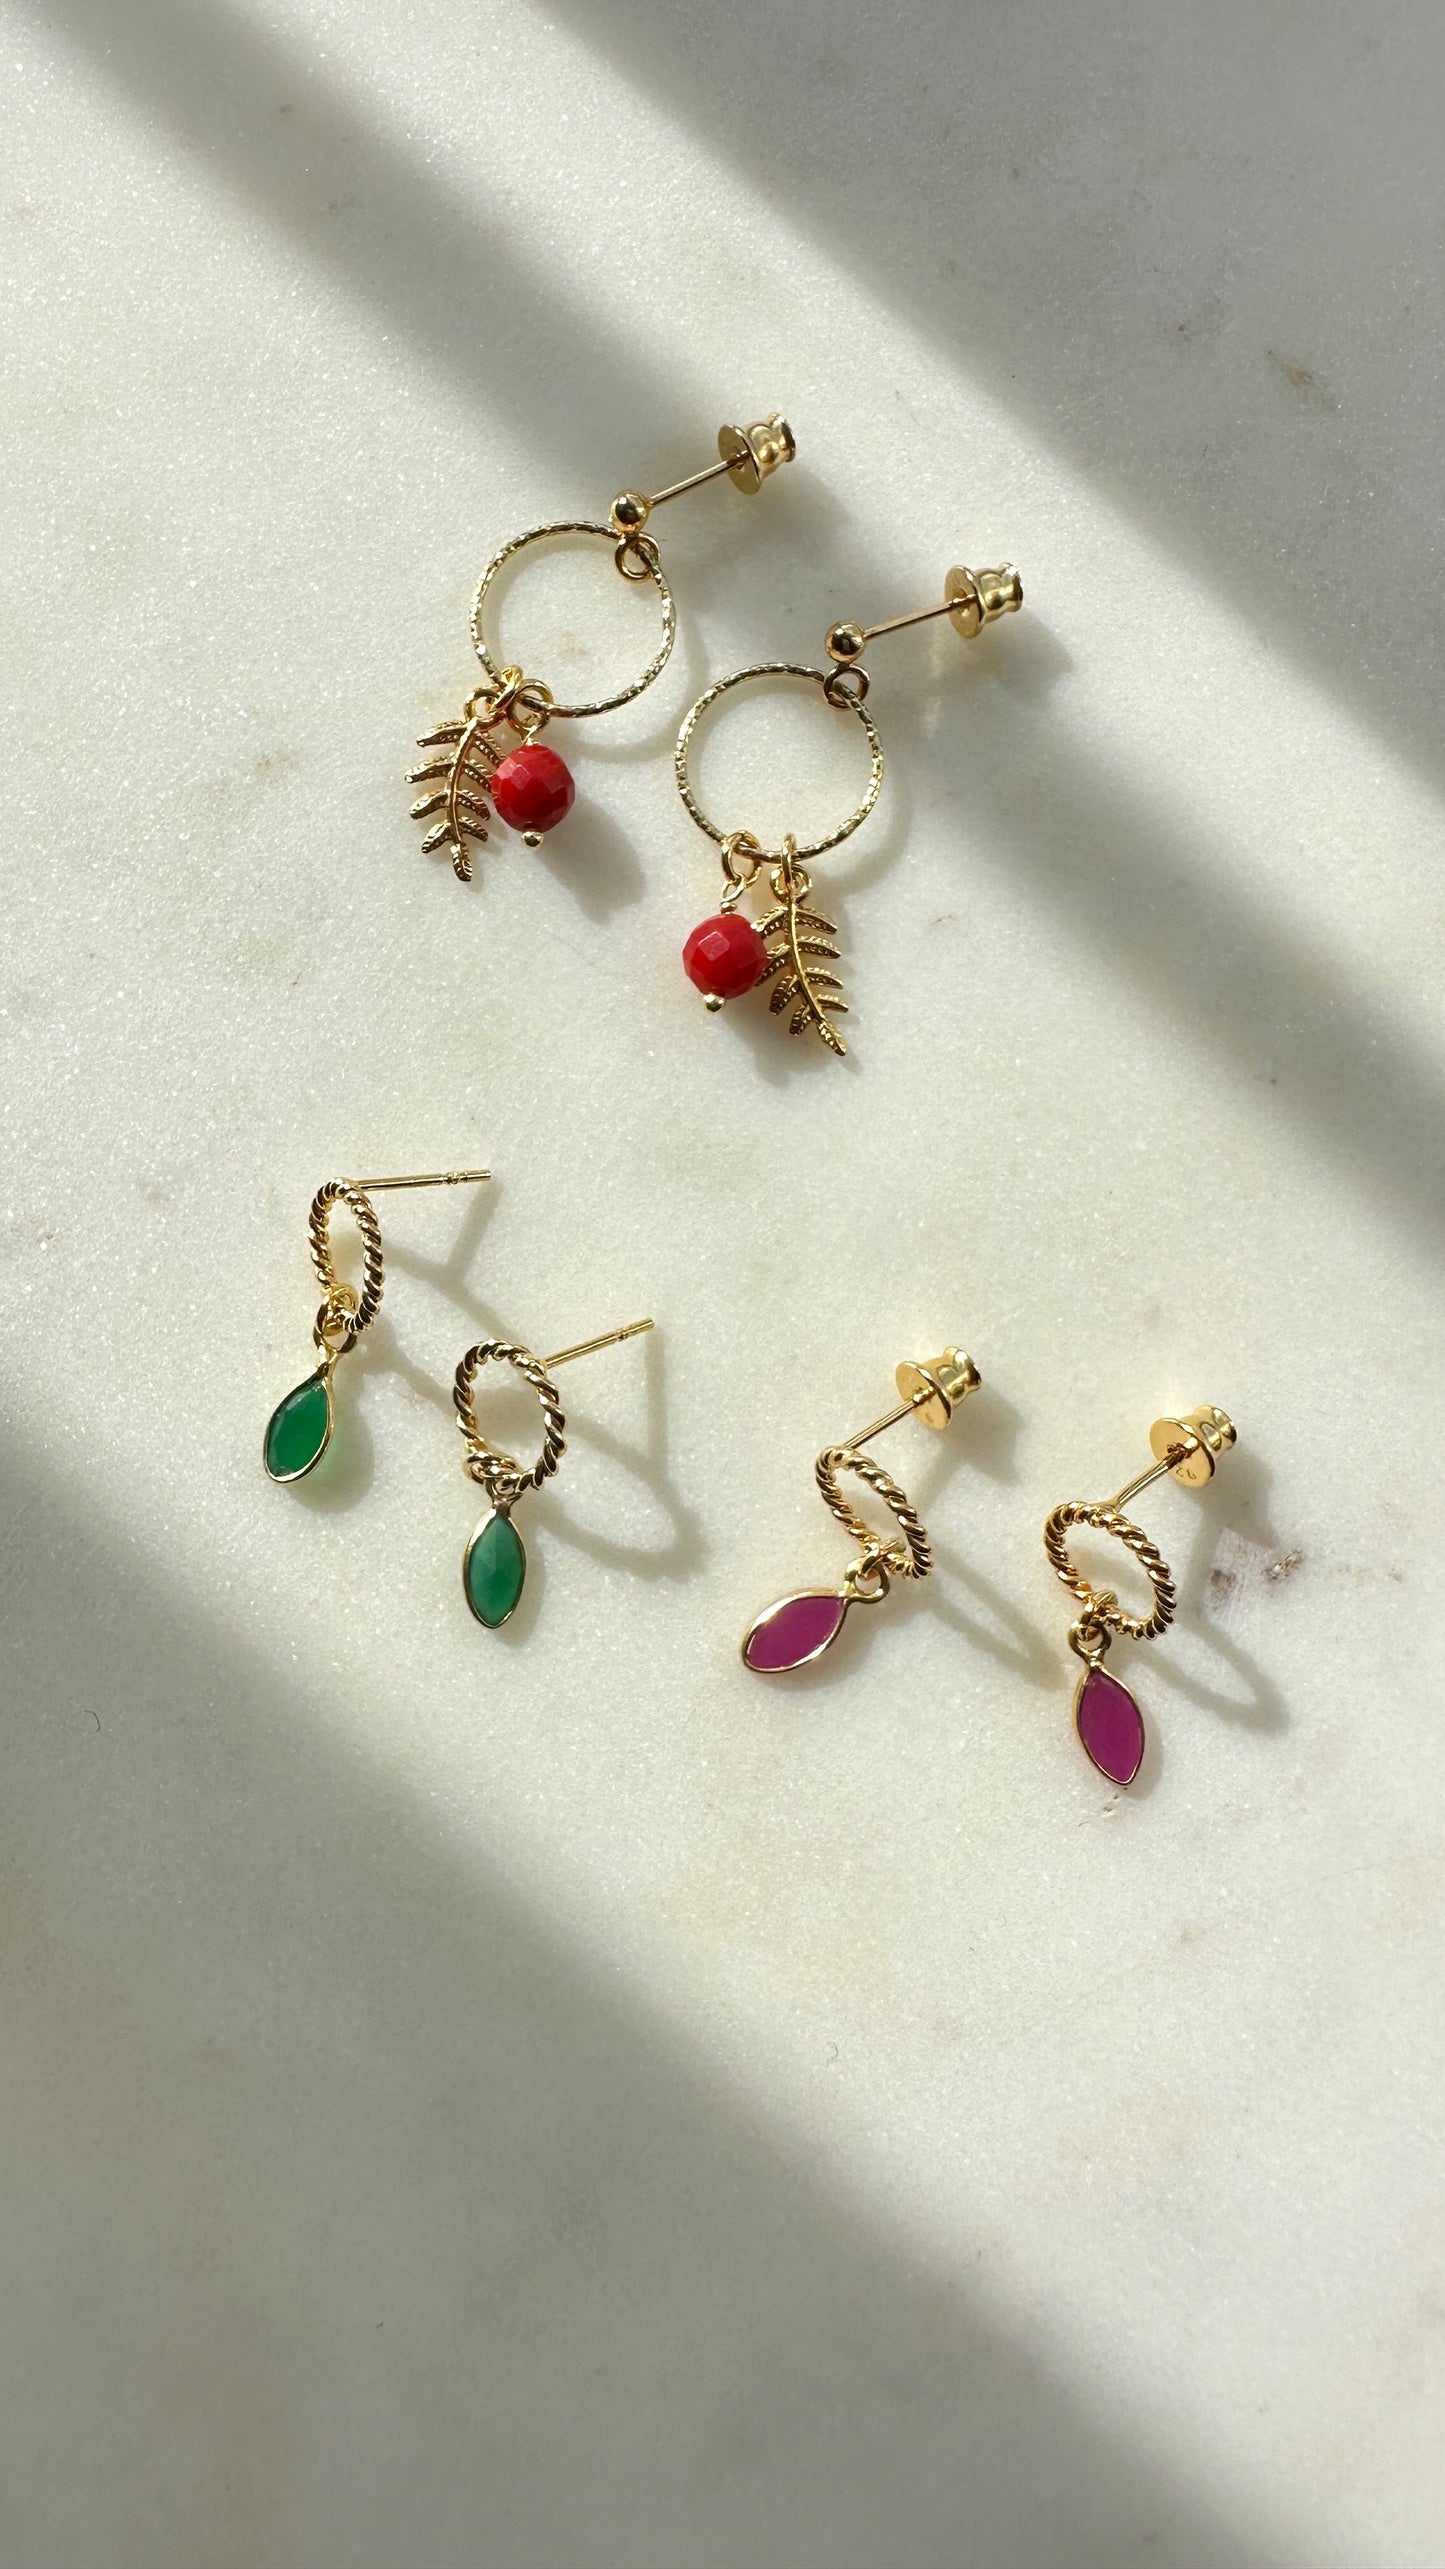 Rowan Berry earrings